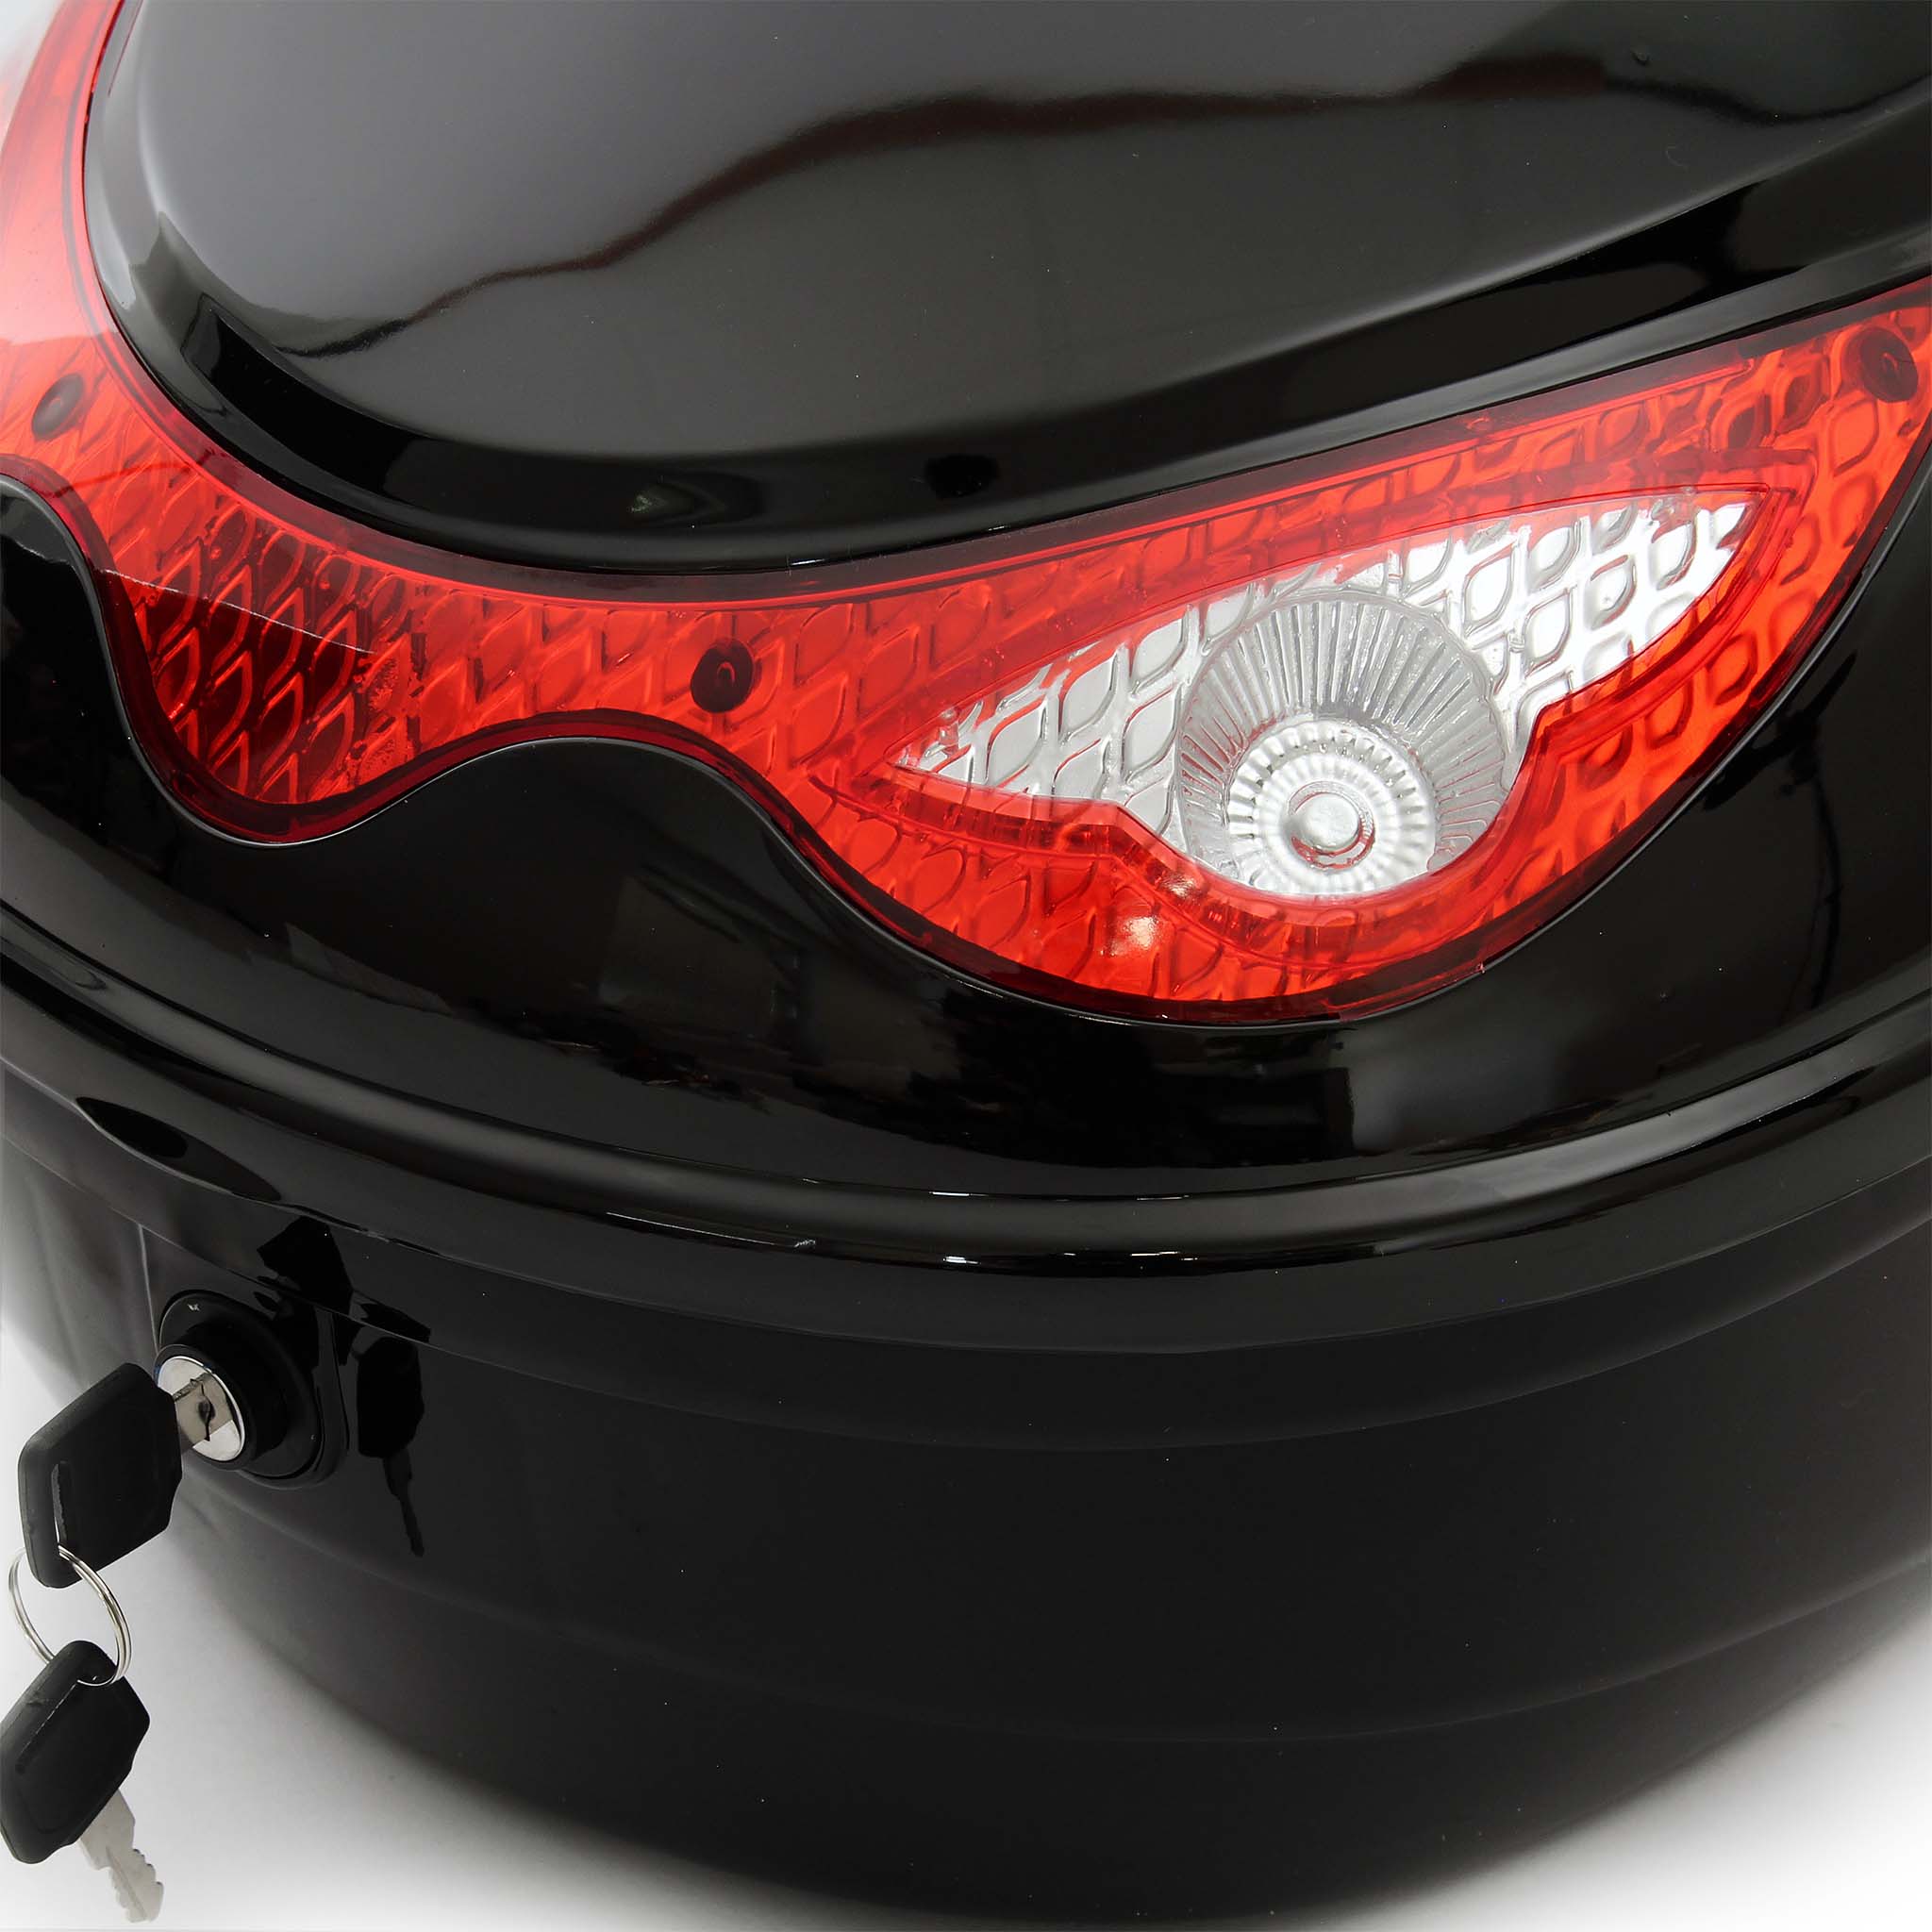  Top Case Moto en Aluminium Coffre pour Moto Roller